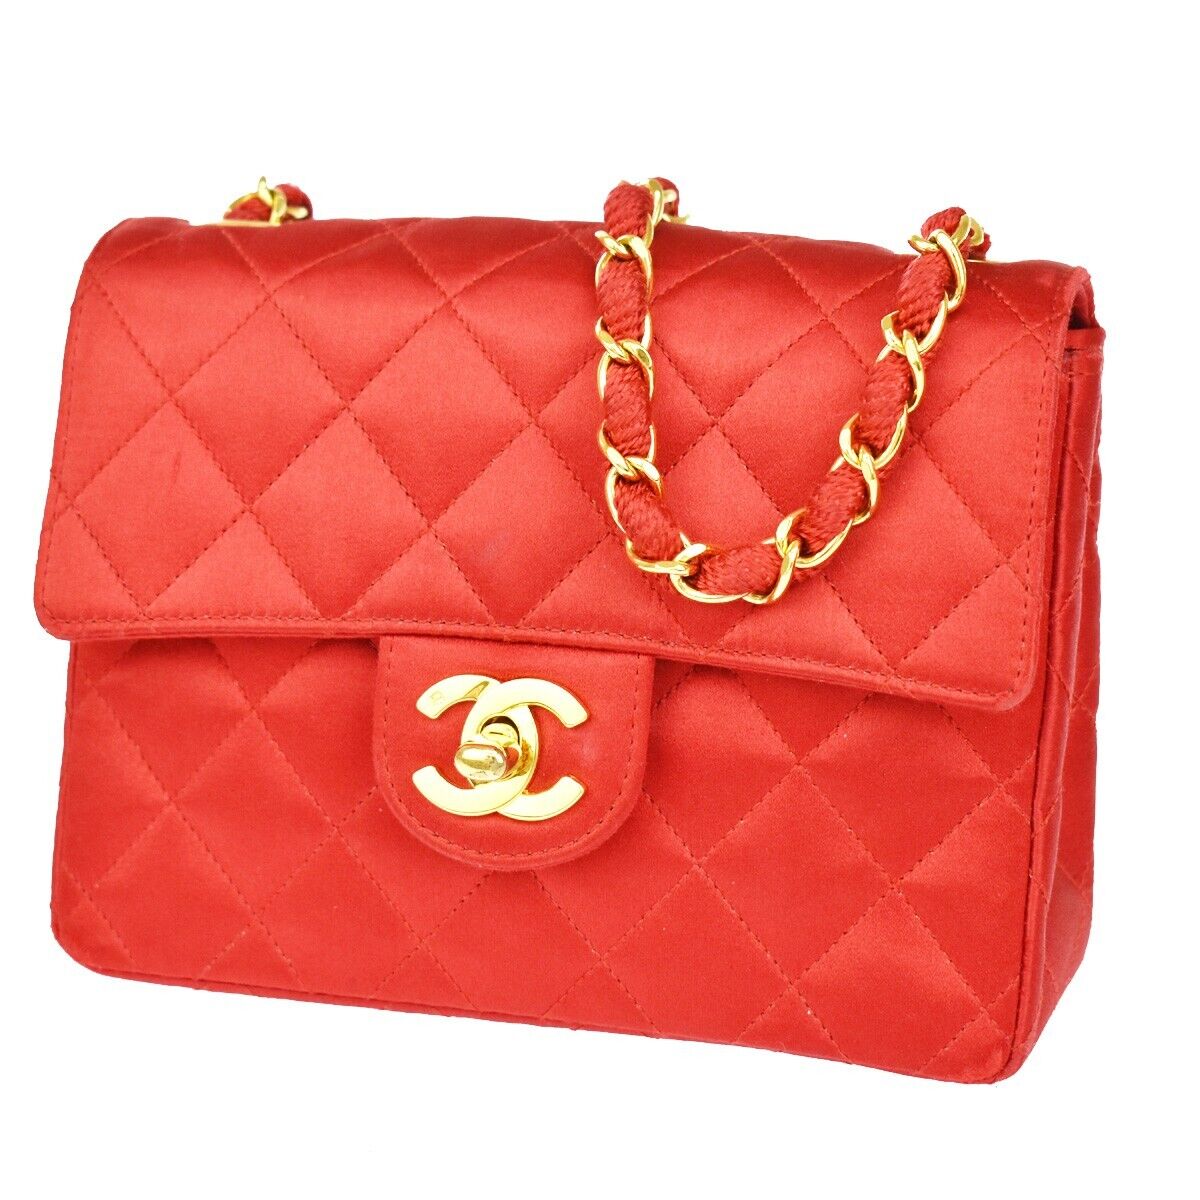 Chanel CC lienzo satinado rojo vintage matelasse cadena mini bolso de hombro 